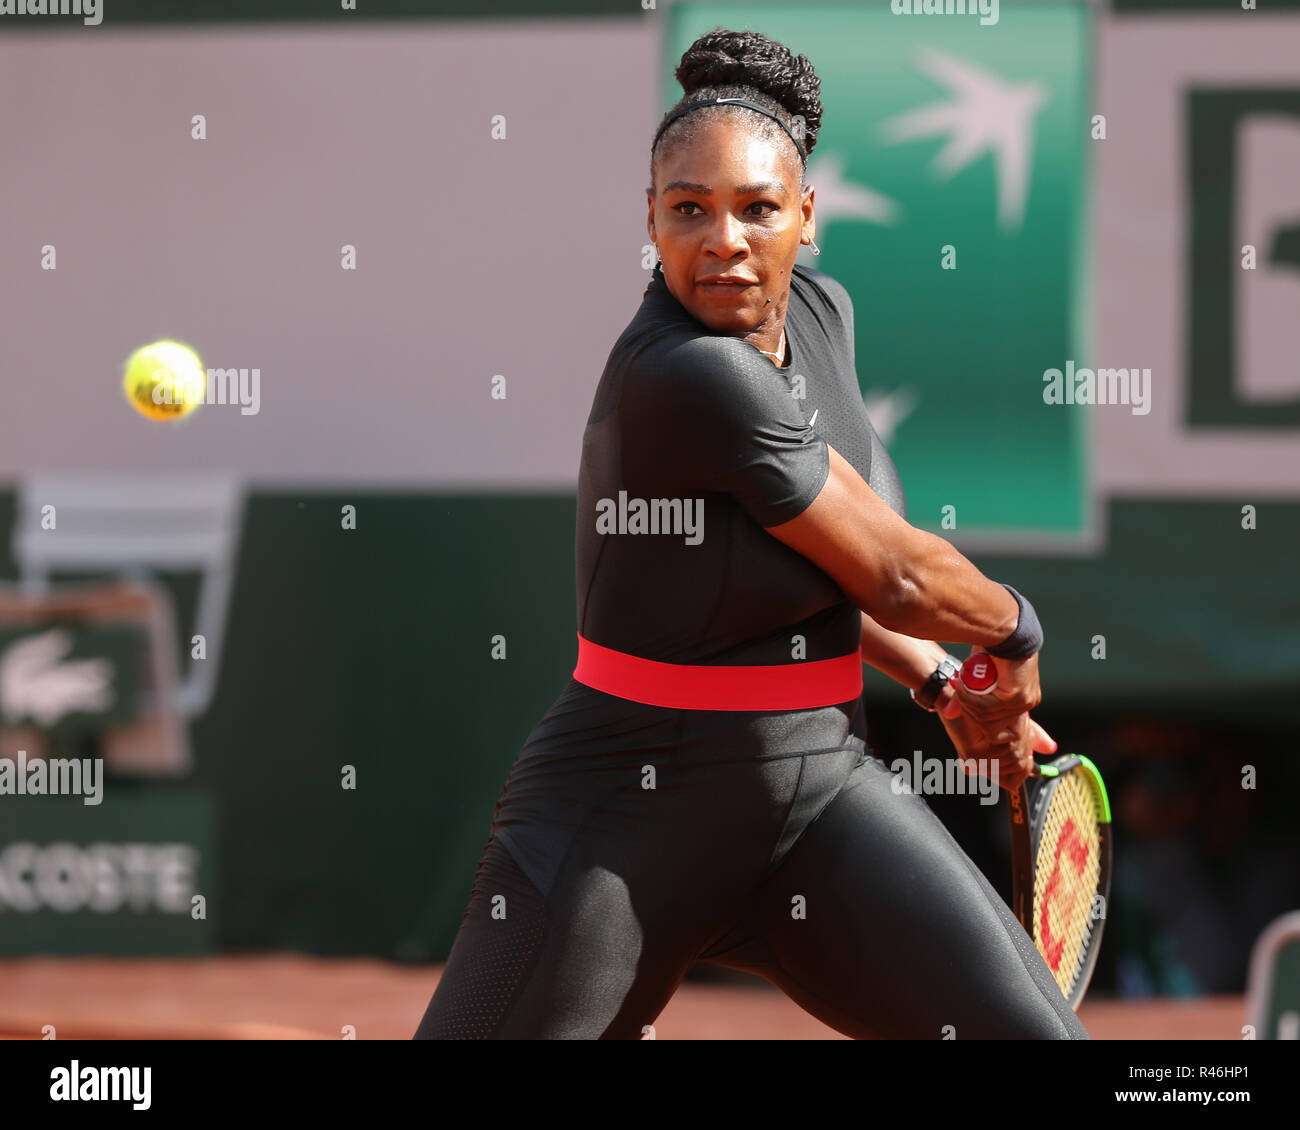 Amerikanische Tennisspielerin Serena Williams spielen eine Rückhand geschossen bei den French Open 2018, Paris, Frankreich Stockfoto